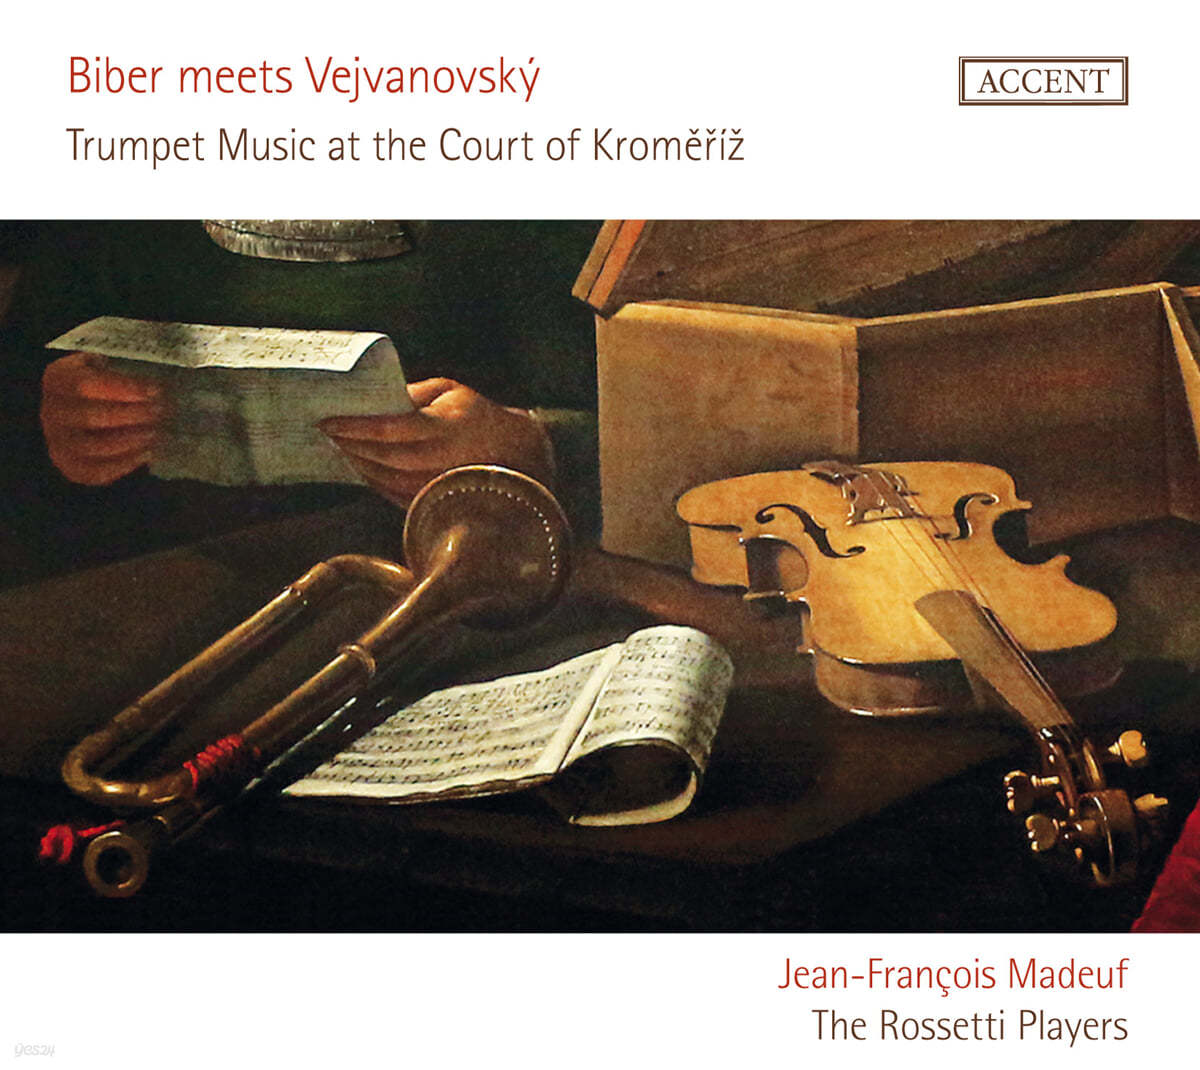 크로메르지시 궁정의 트럼펫 음악 - 비버, 베이바노프스키, 프로베르거, 베르탈리의 작품들 (Trumpet Music At the Court of Kromeriz)